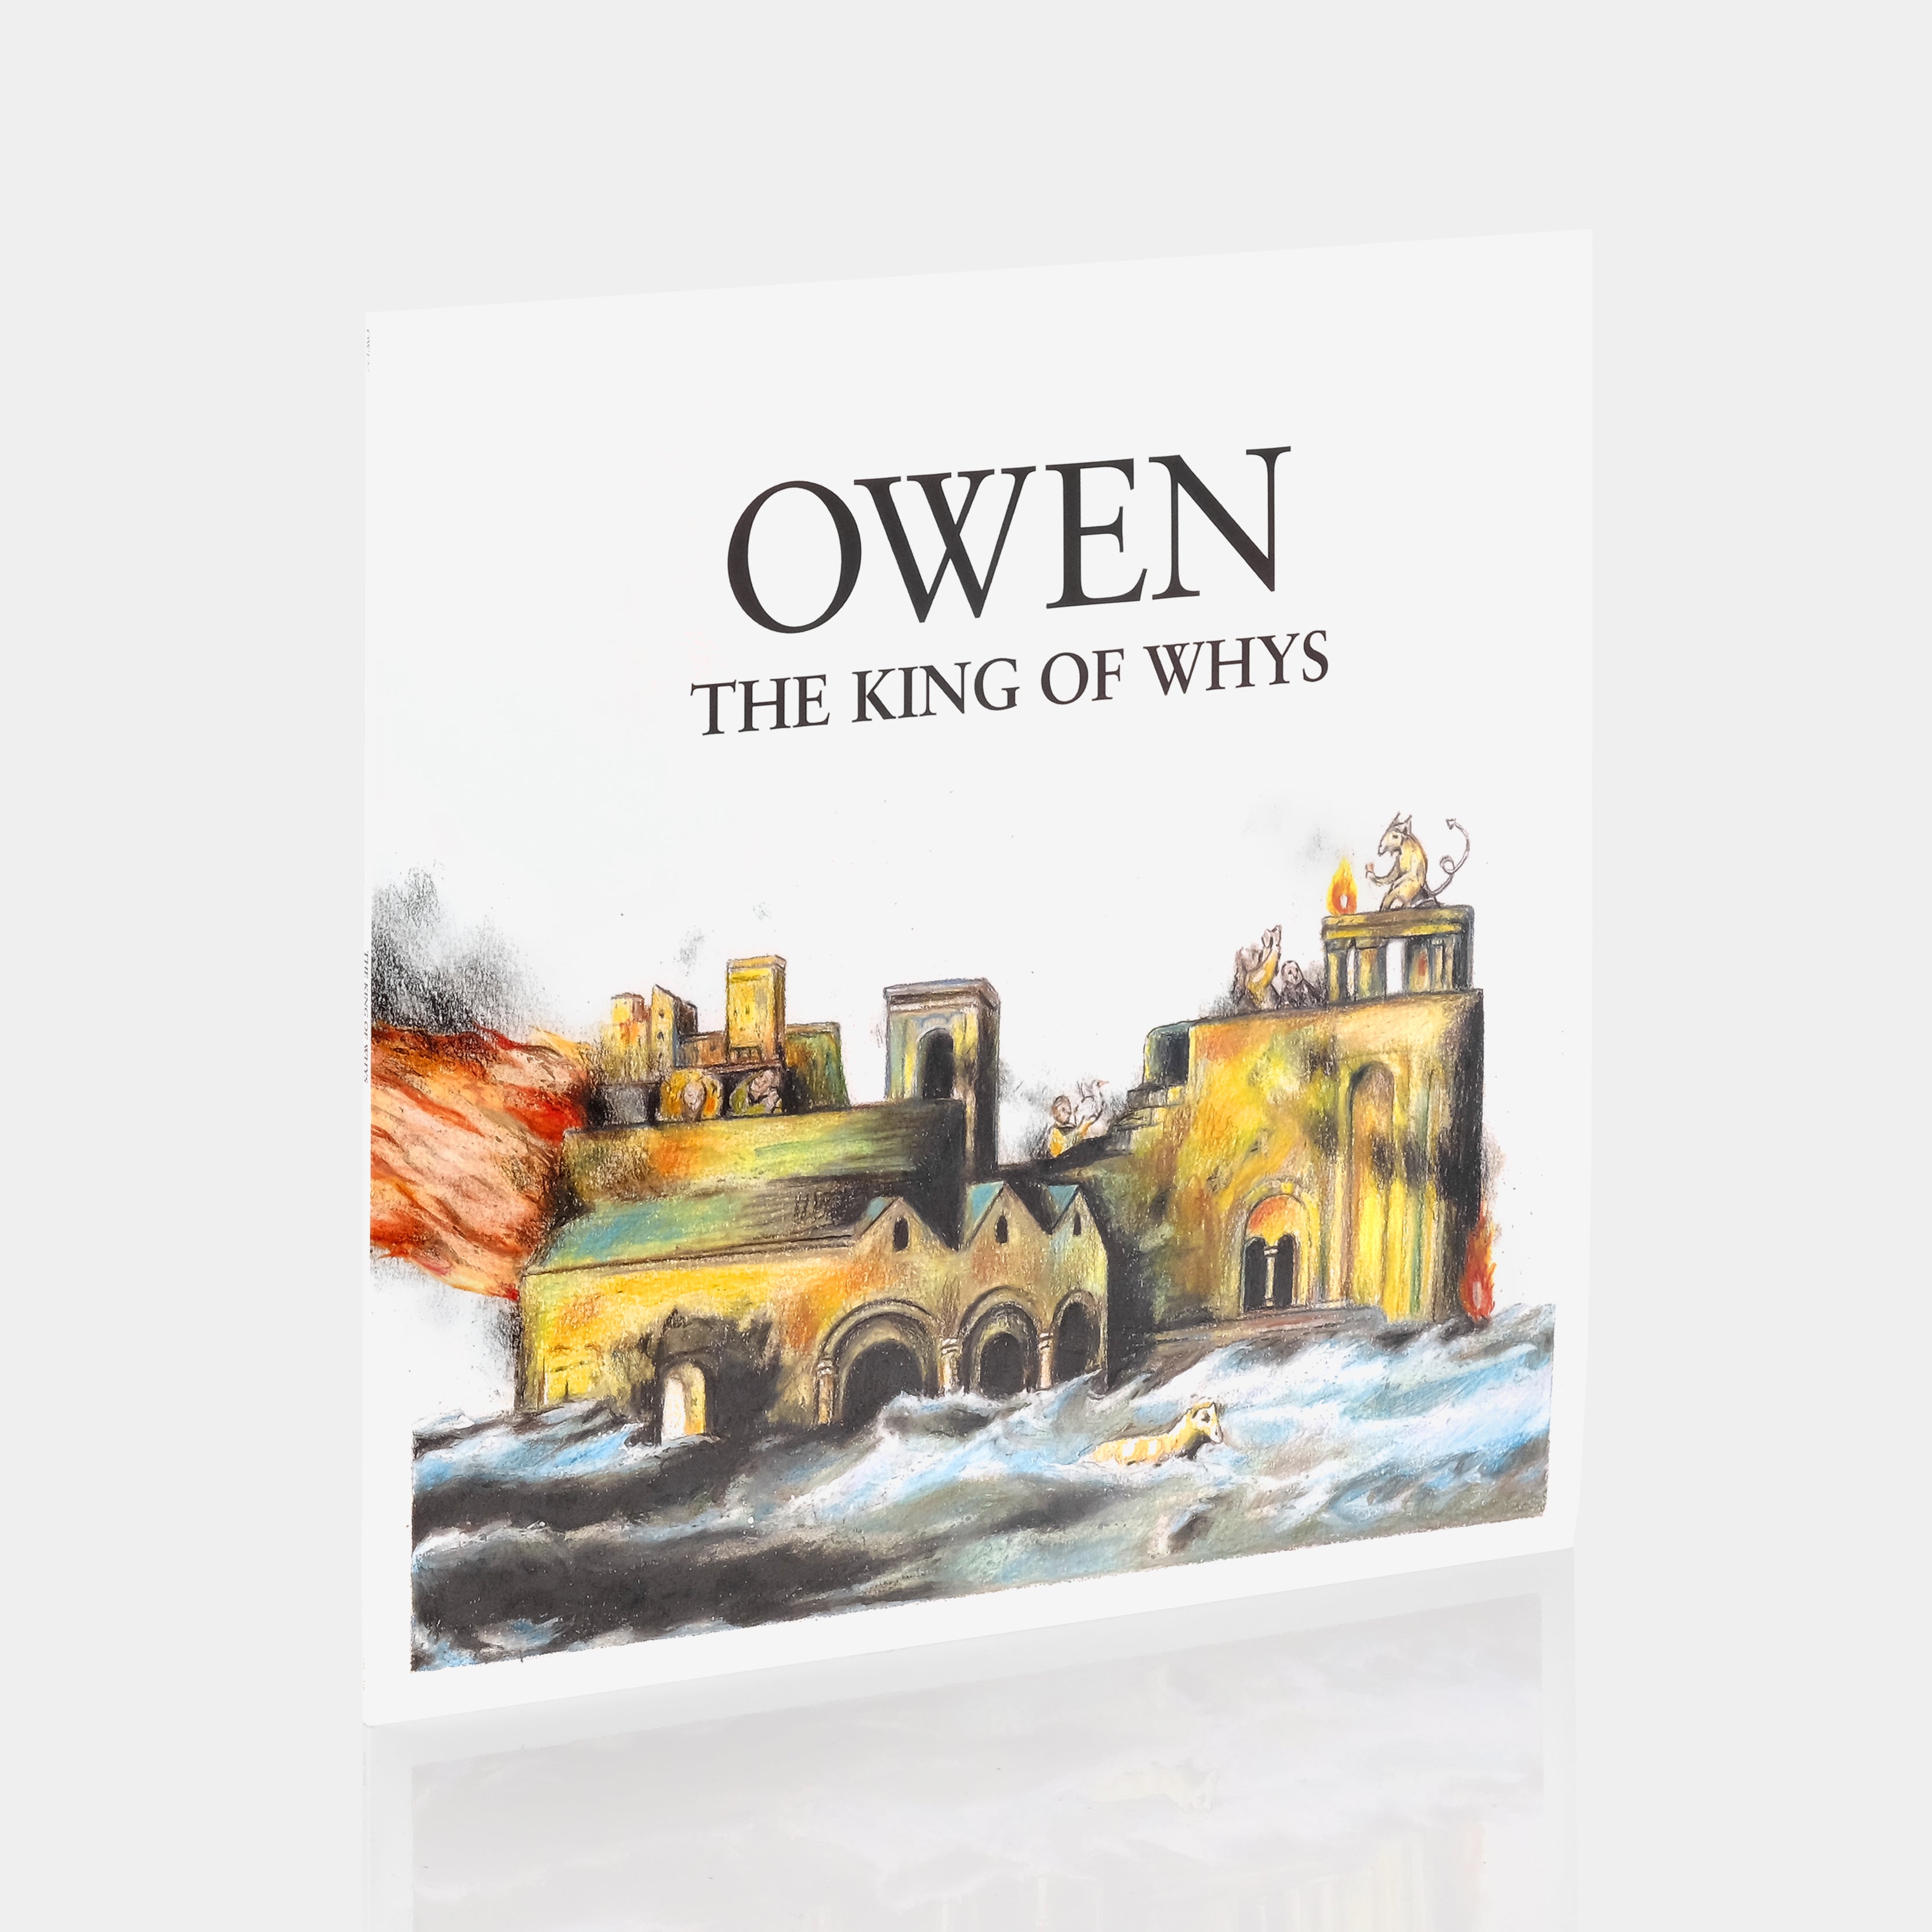 Owen - The King Of Whys LP Blue & White Starburst Vinyl Record